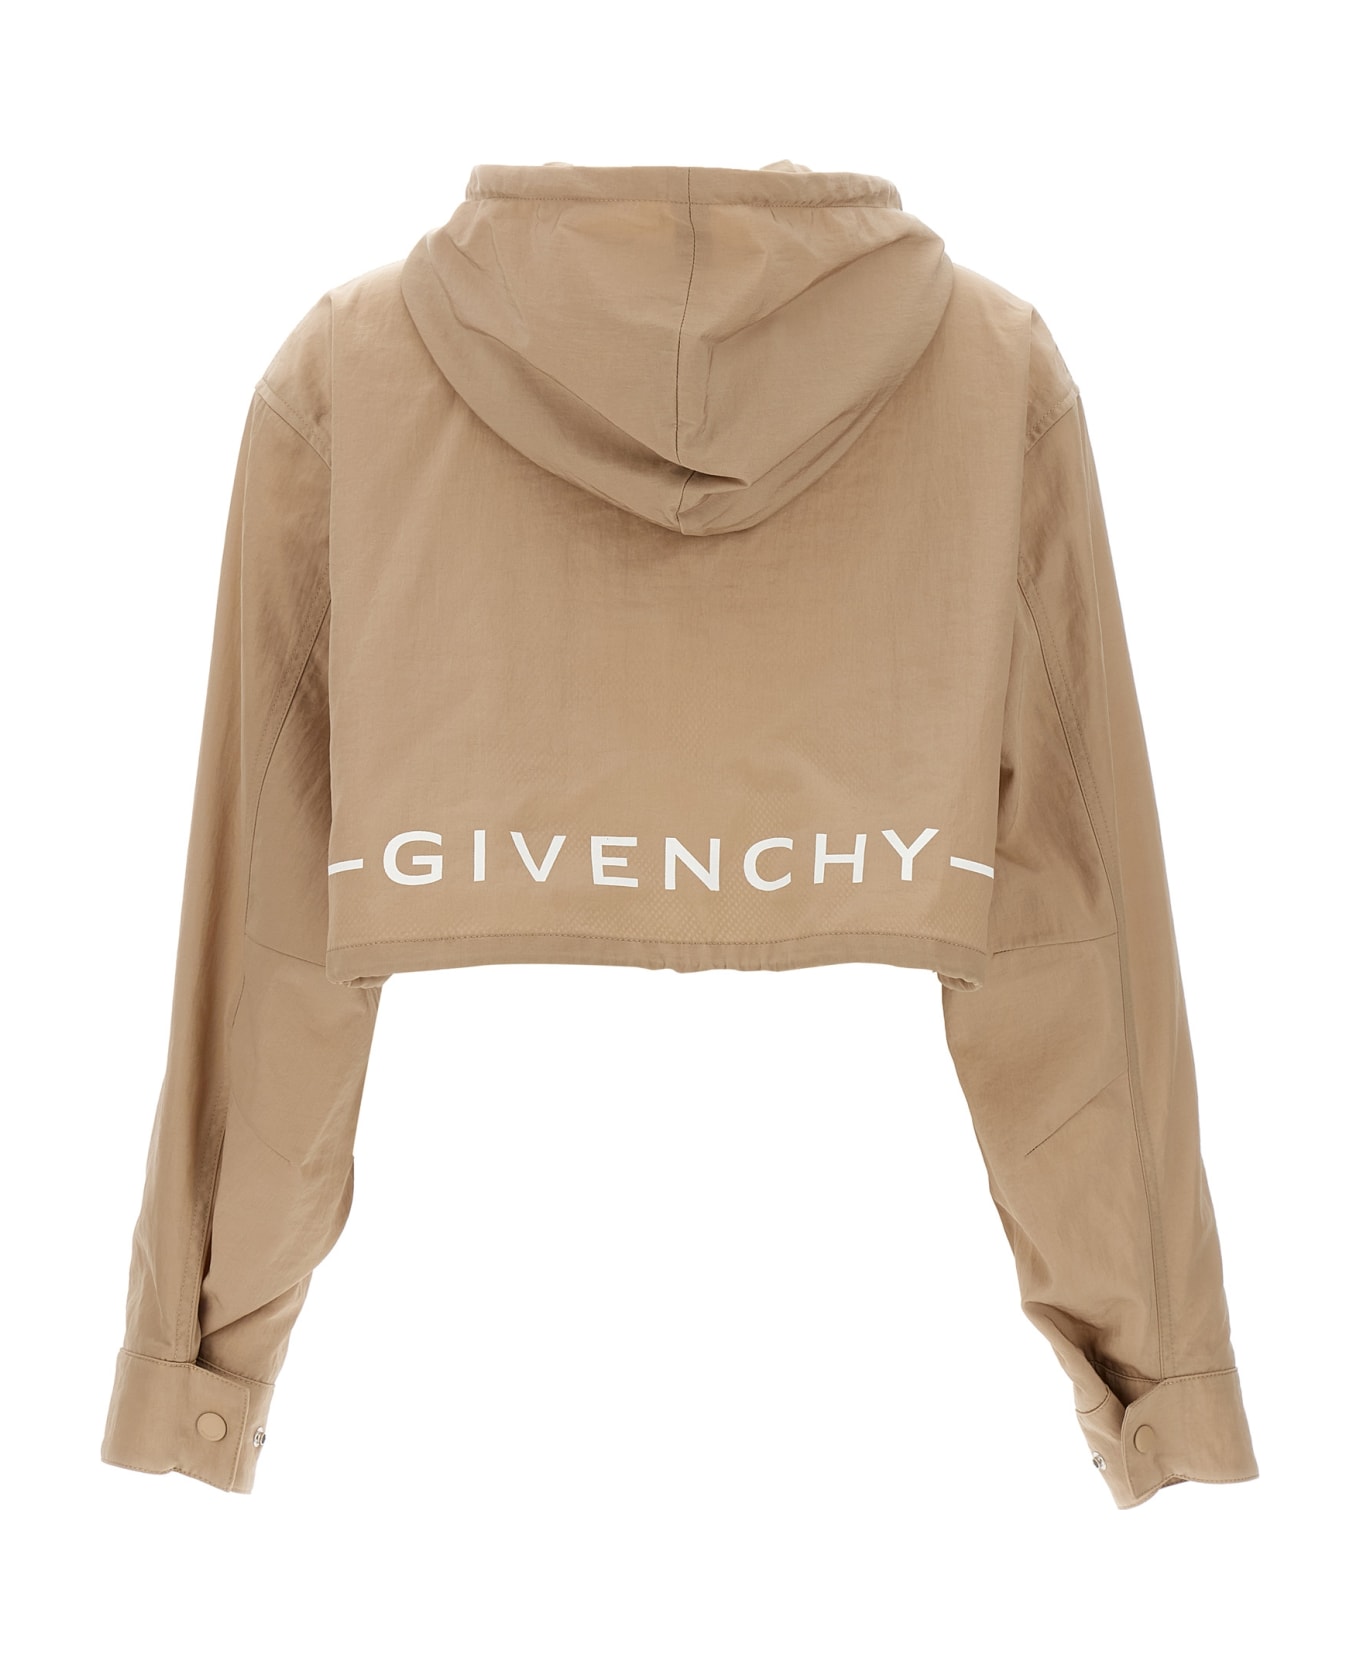 Givenchy K-way Logo - Beige ジャケット